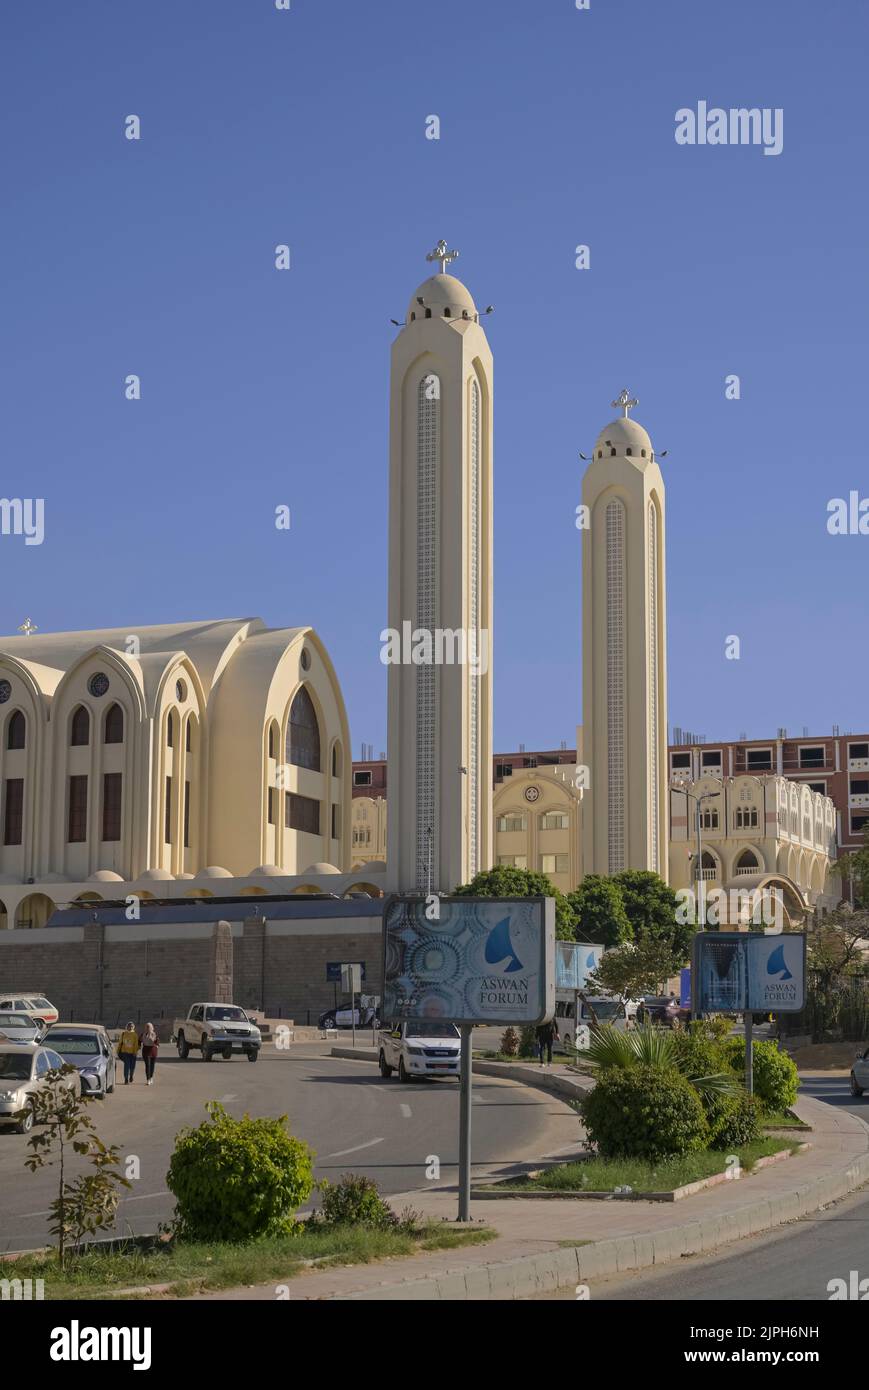 Koptisch ortodoxe Kathedrale Erzengel Michael, Assuan, Ägypten Foto Stock